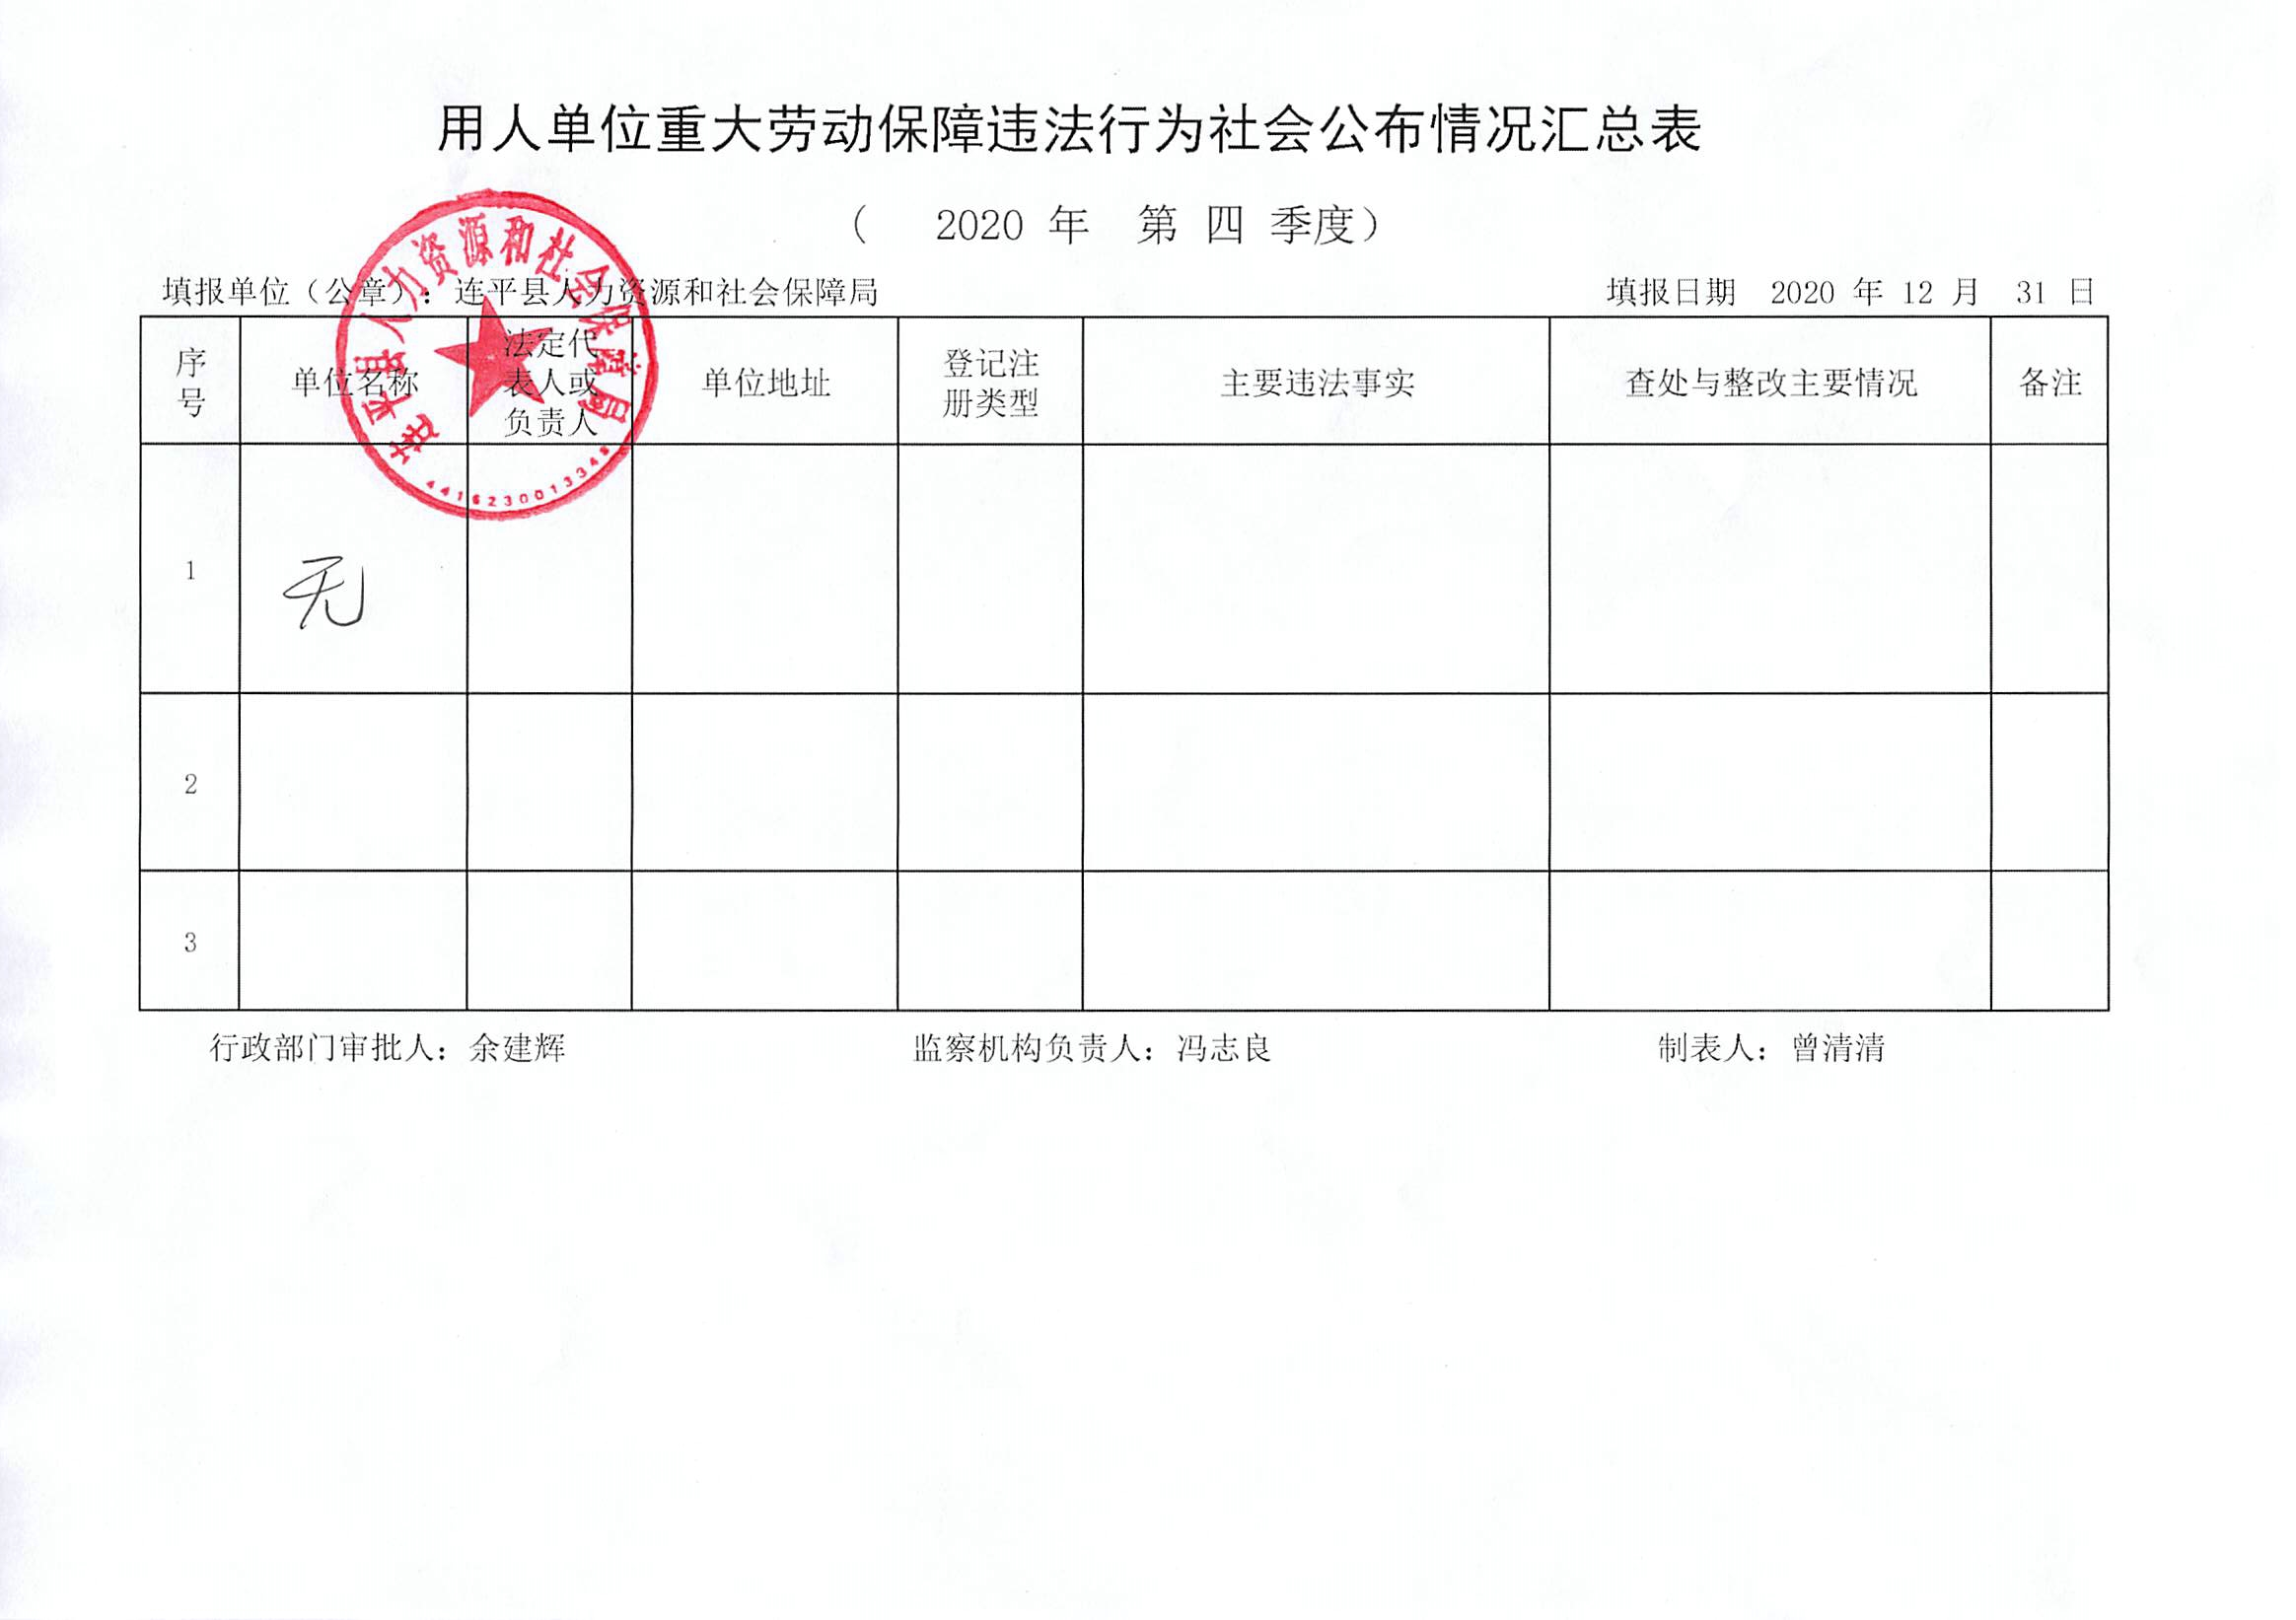 连平县用人单位重大劳动保障违法行为社会公布信息表（第四季度）.jpg